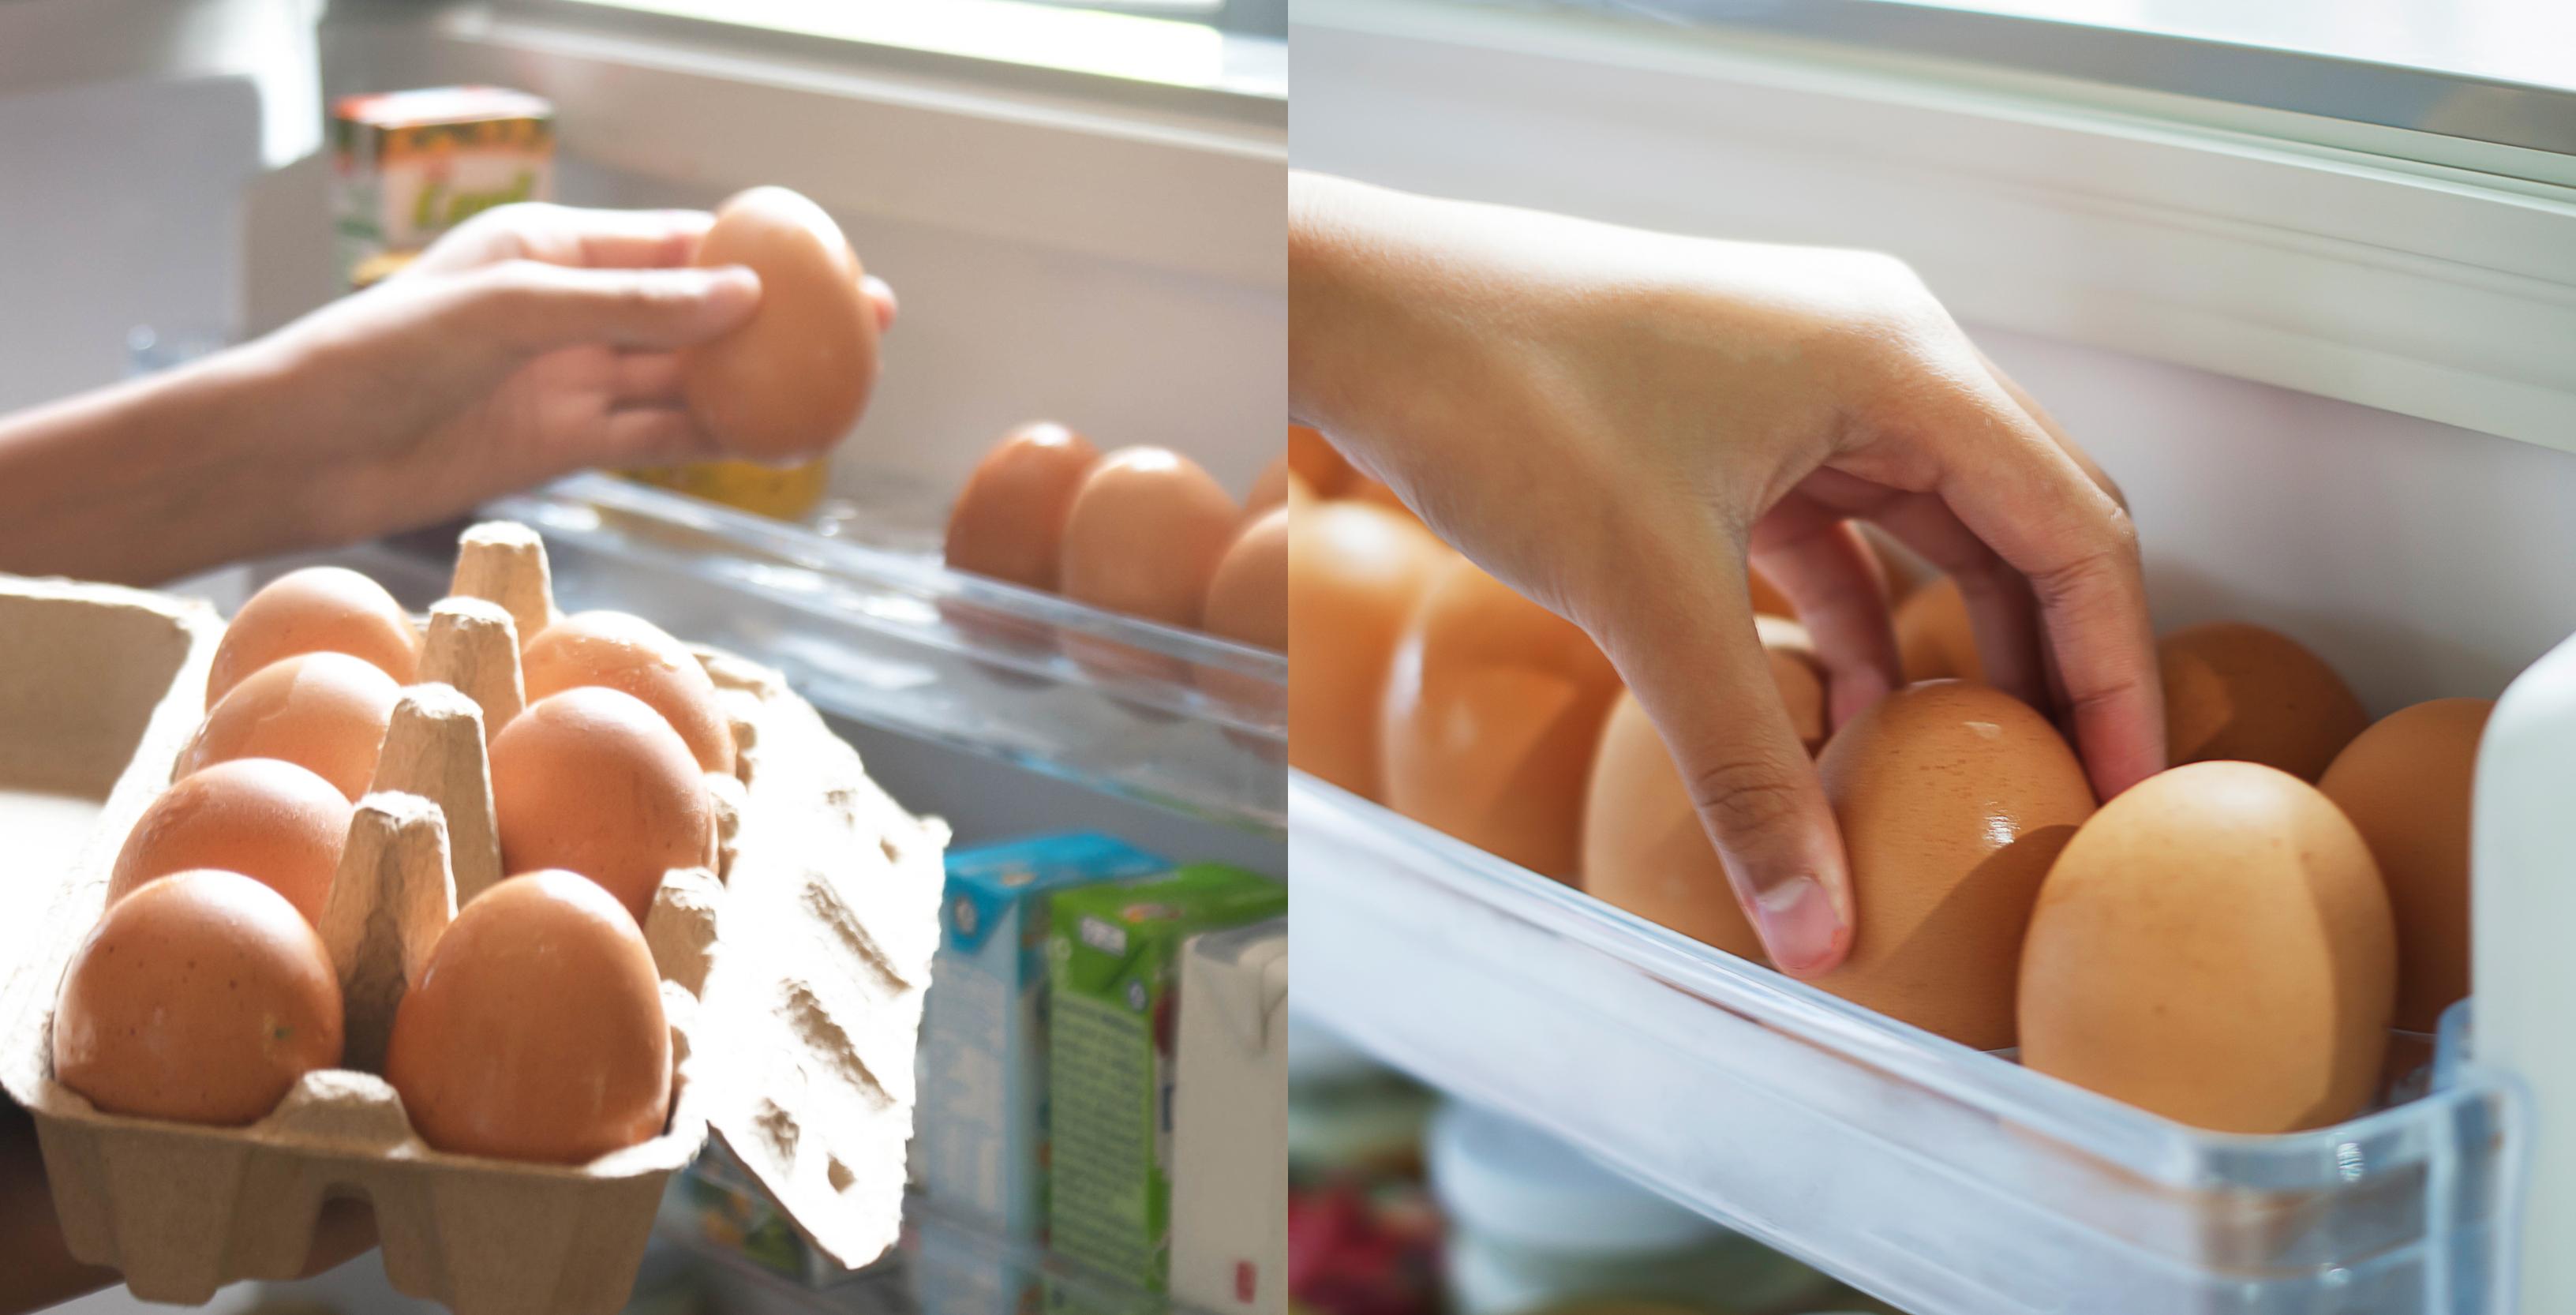 De ce nu este bine să ții ouăle pe ușa frigiderului. Greșeala pe care toți oamenii o fac. Cum afectează și unde trebuie ținute